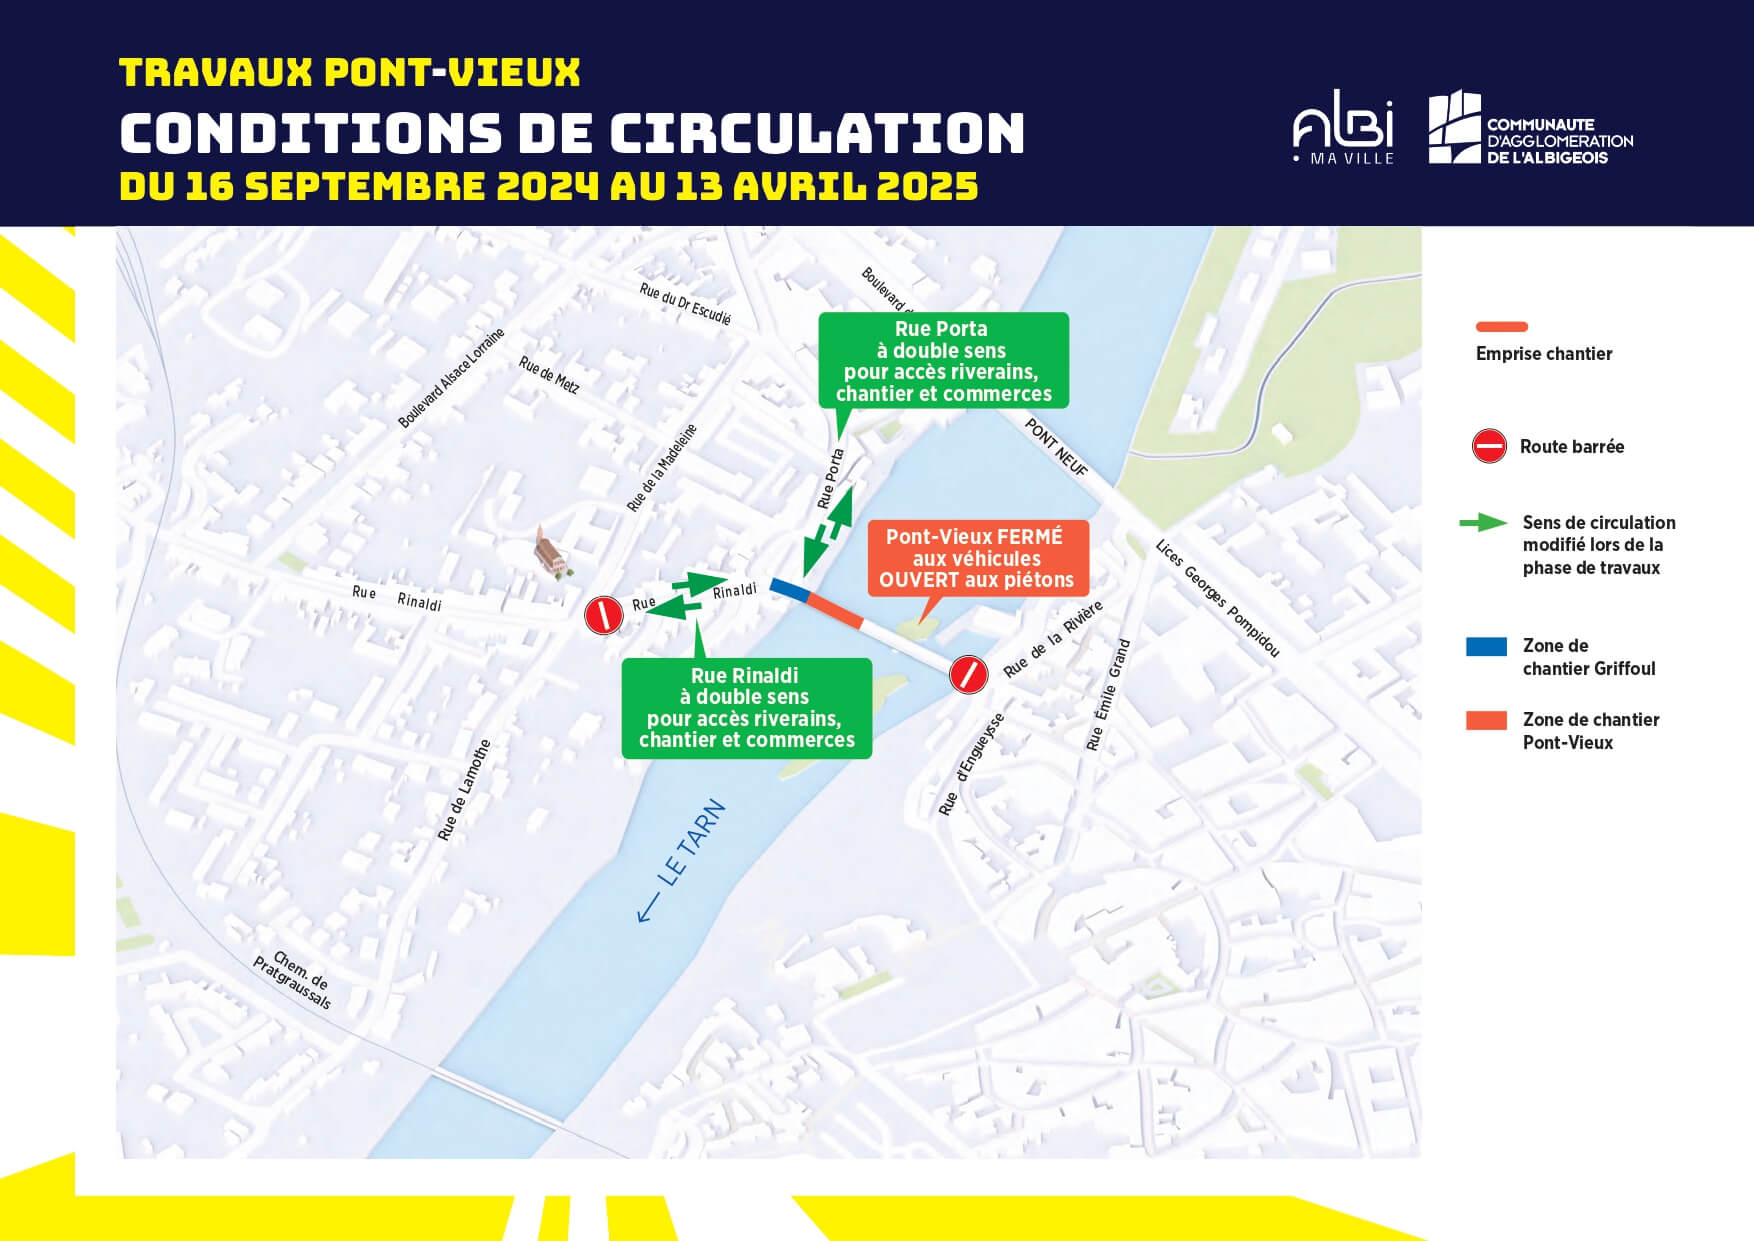 Plan de circulation Pont-Vieux septembre 202 à avril 2025